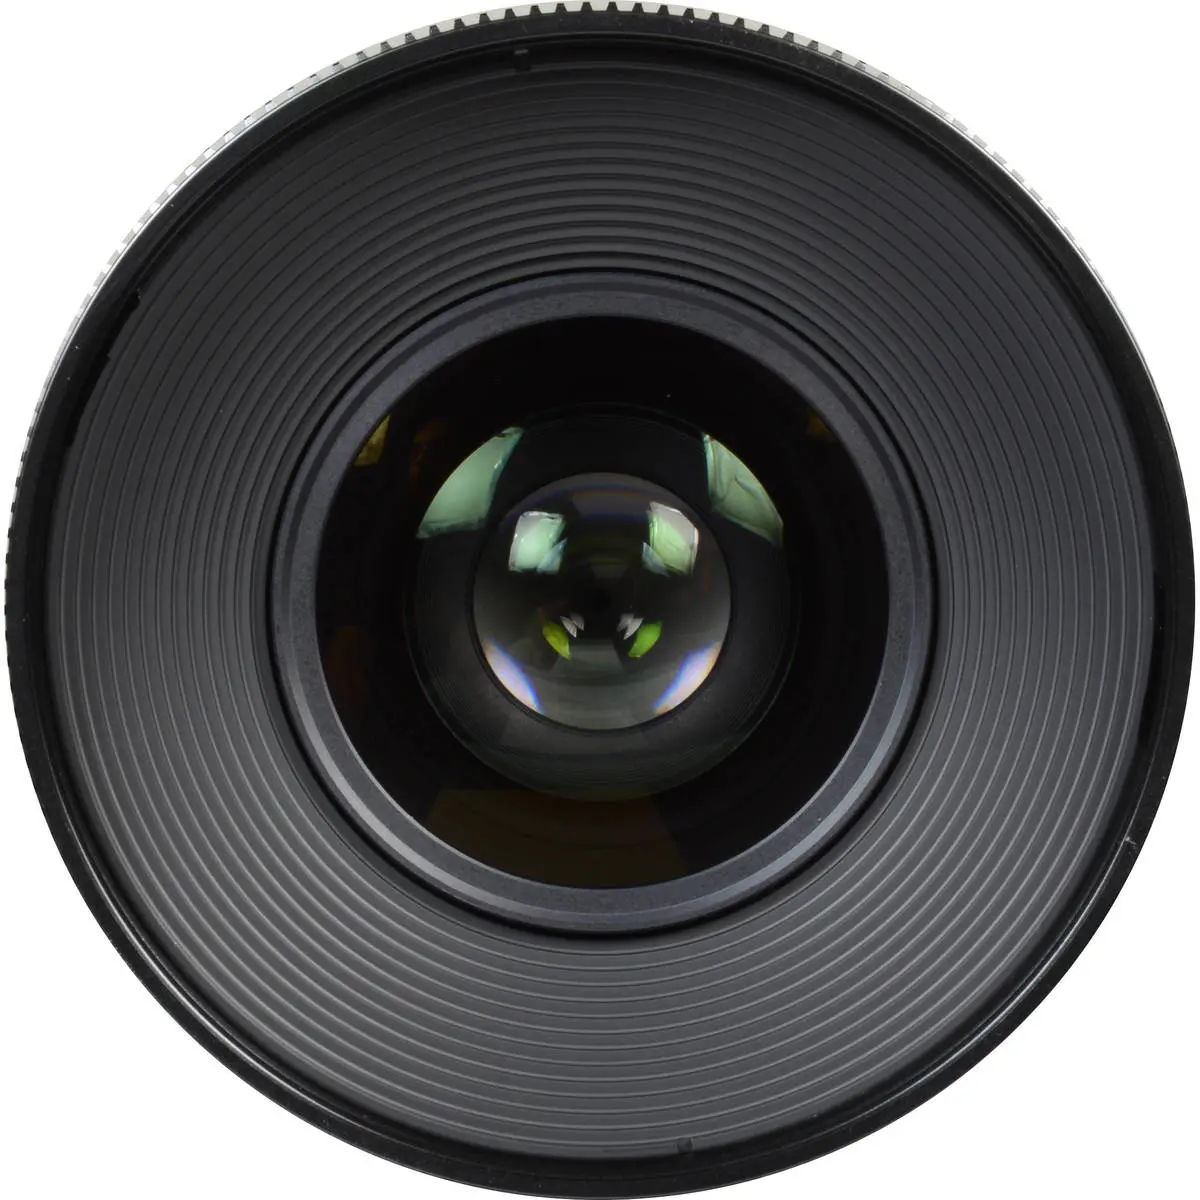 5. Samyang Xeen 35mm T1.5 (Sony E) Lens